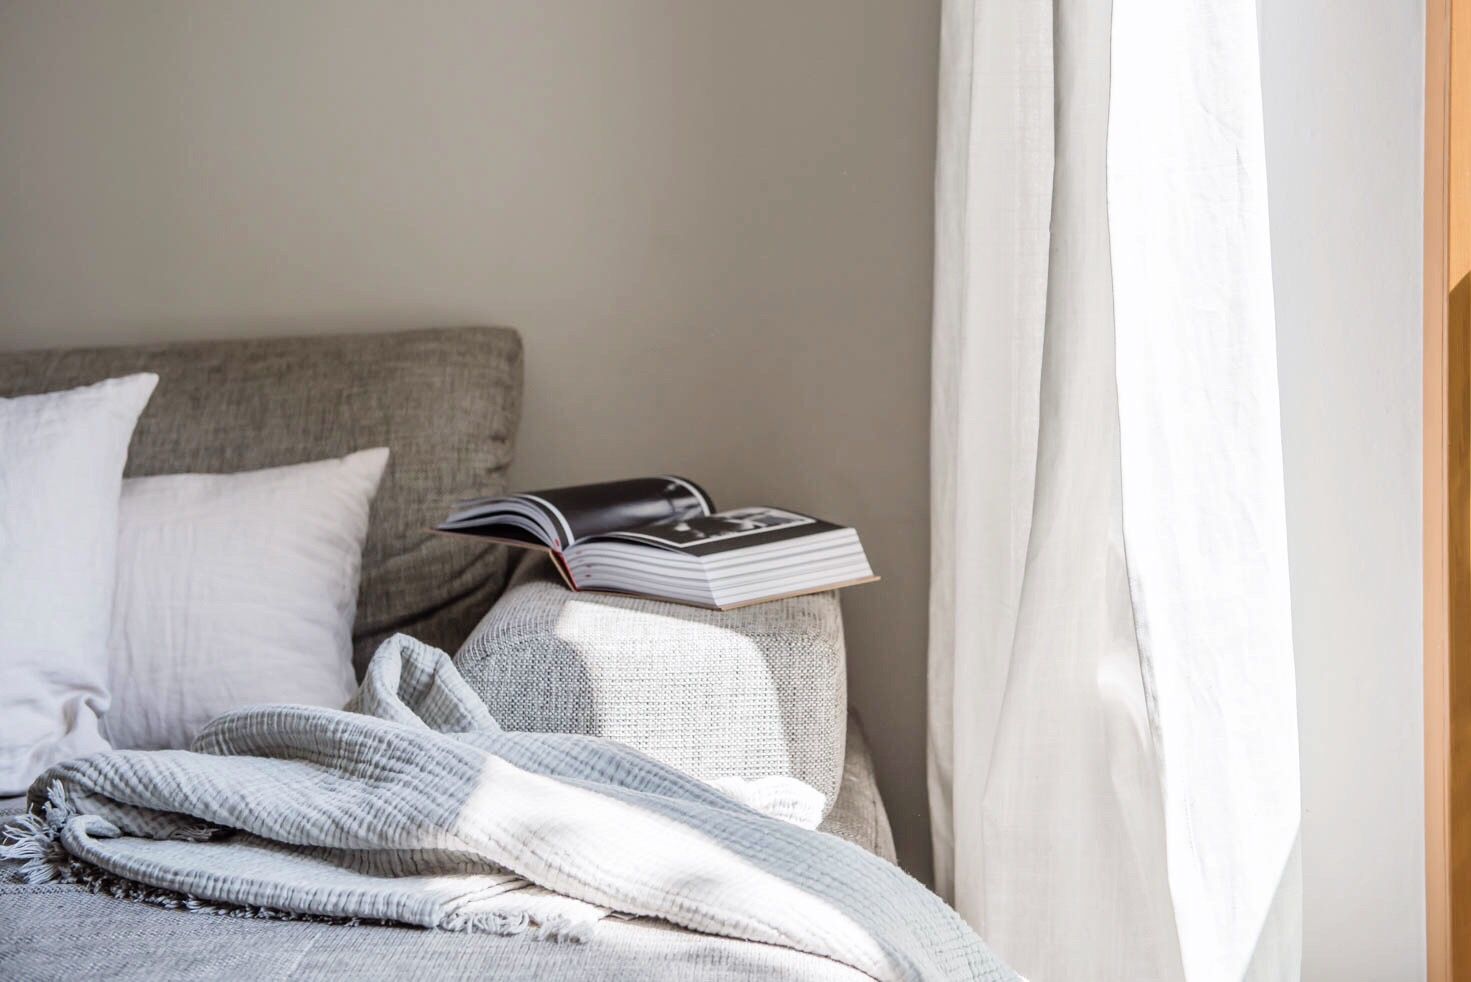 Imagem de um sofá com travesseiros, cobertor e um livro aberto na borda. O sofá está ao lado de uma cortina branca